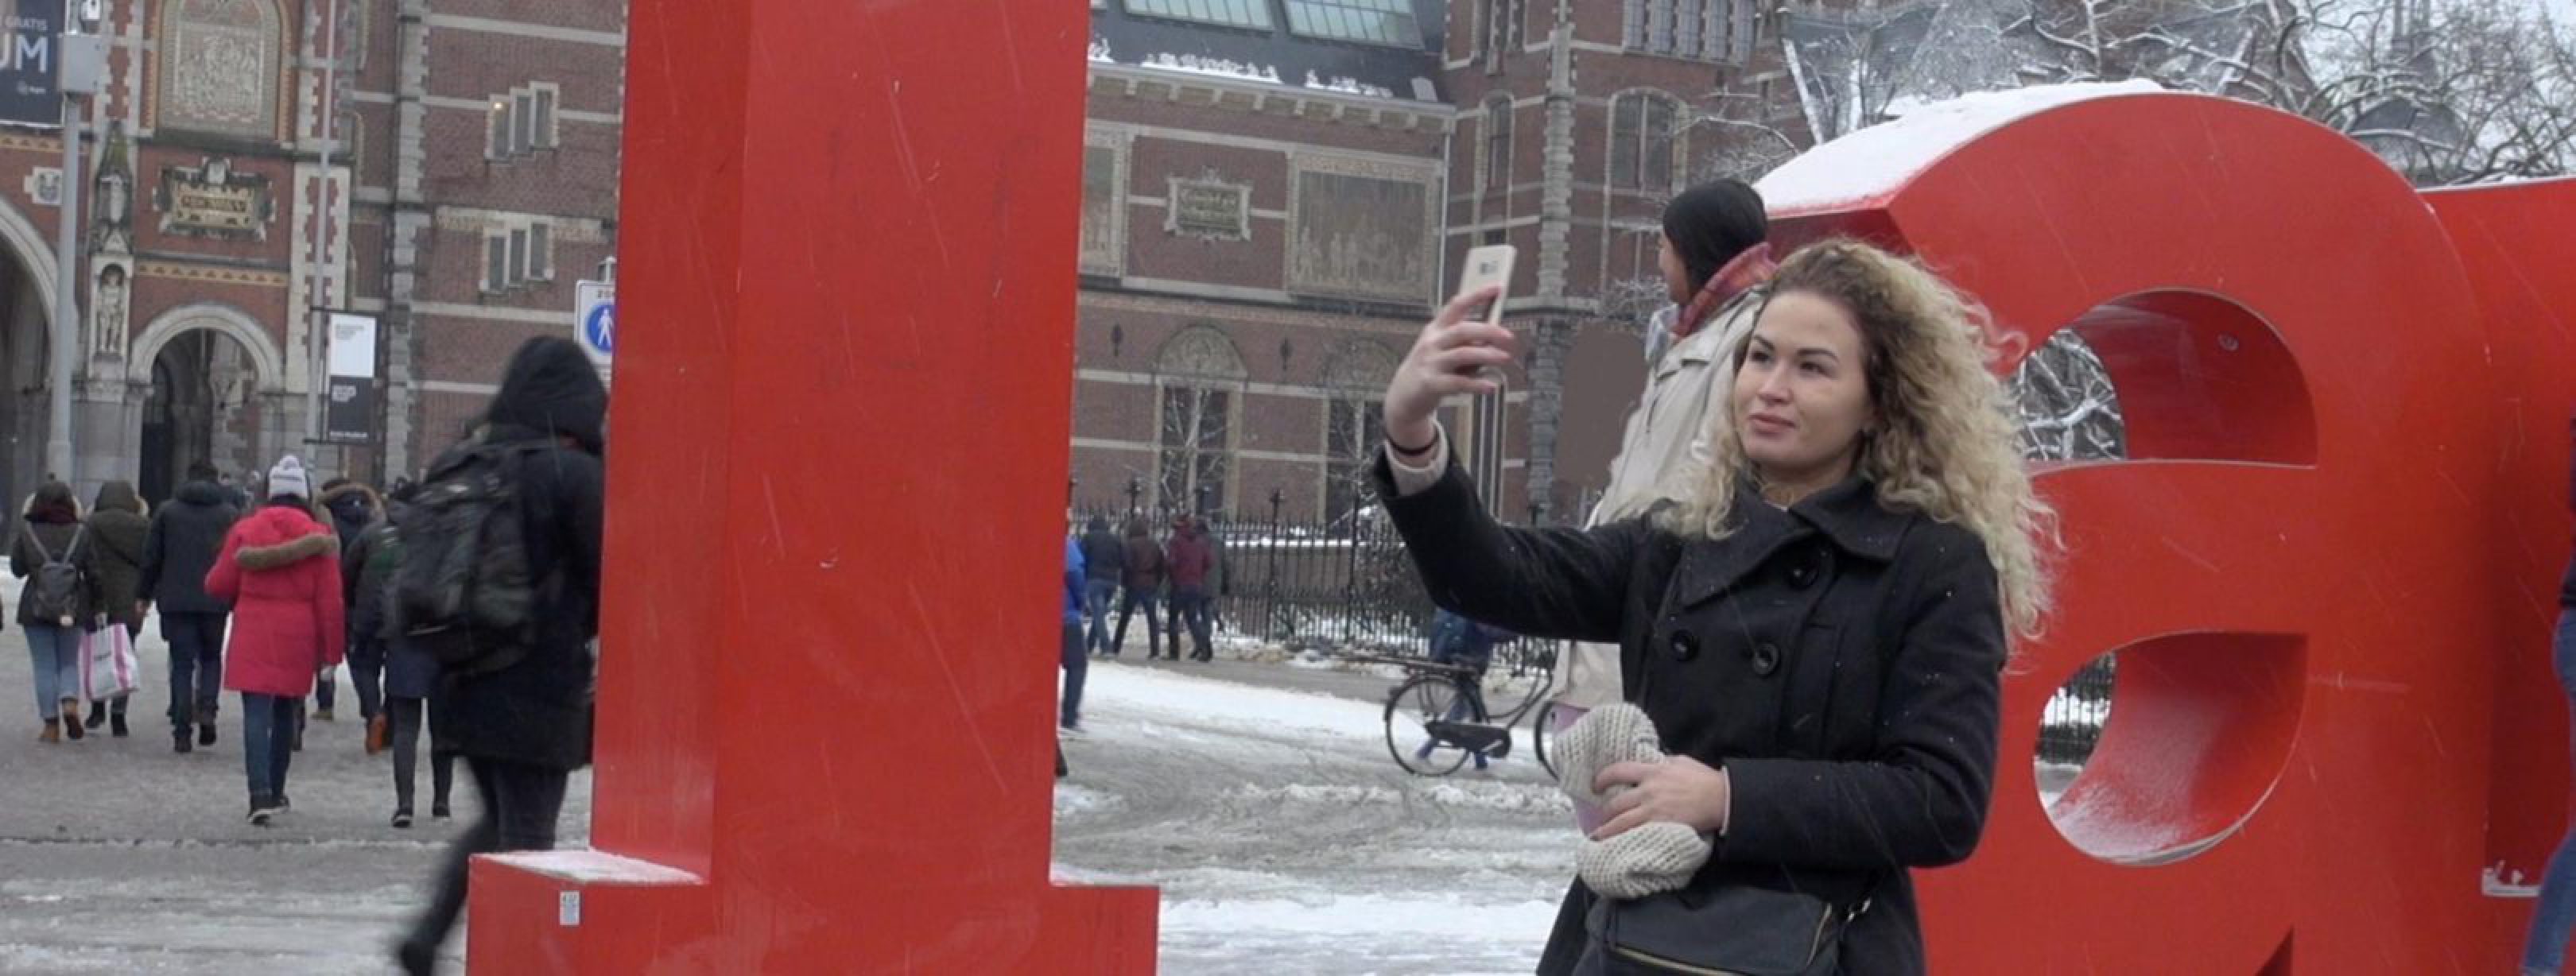 selfie-bij-letters-I-Amsterdam-header